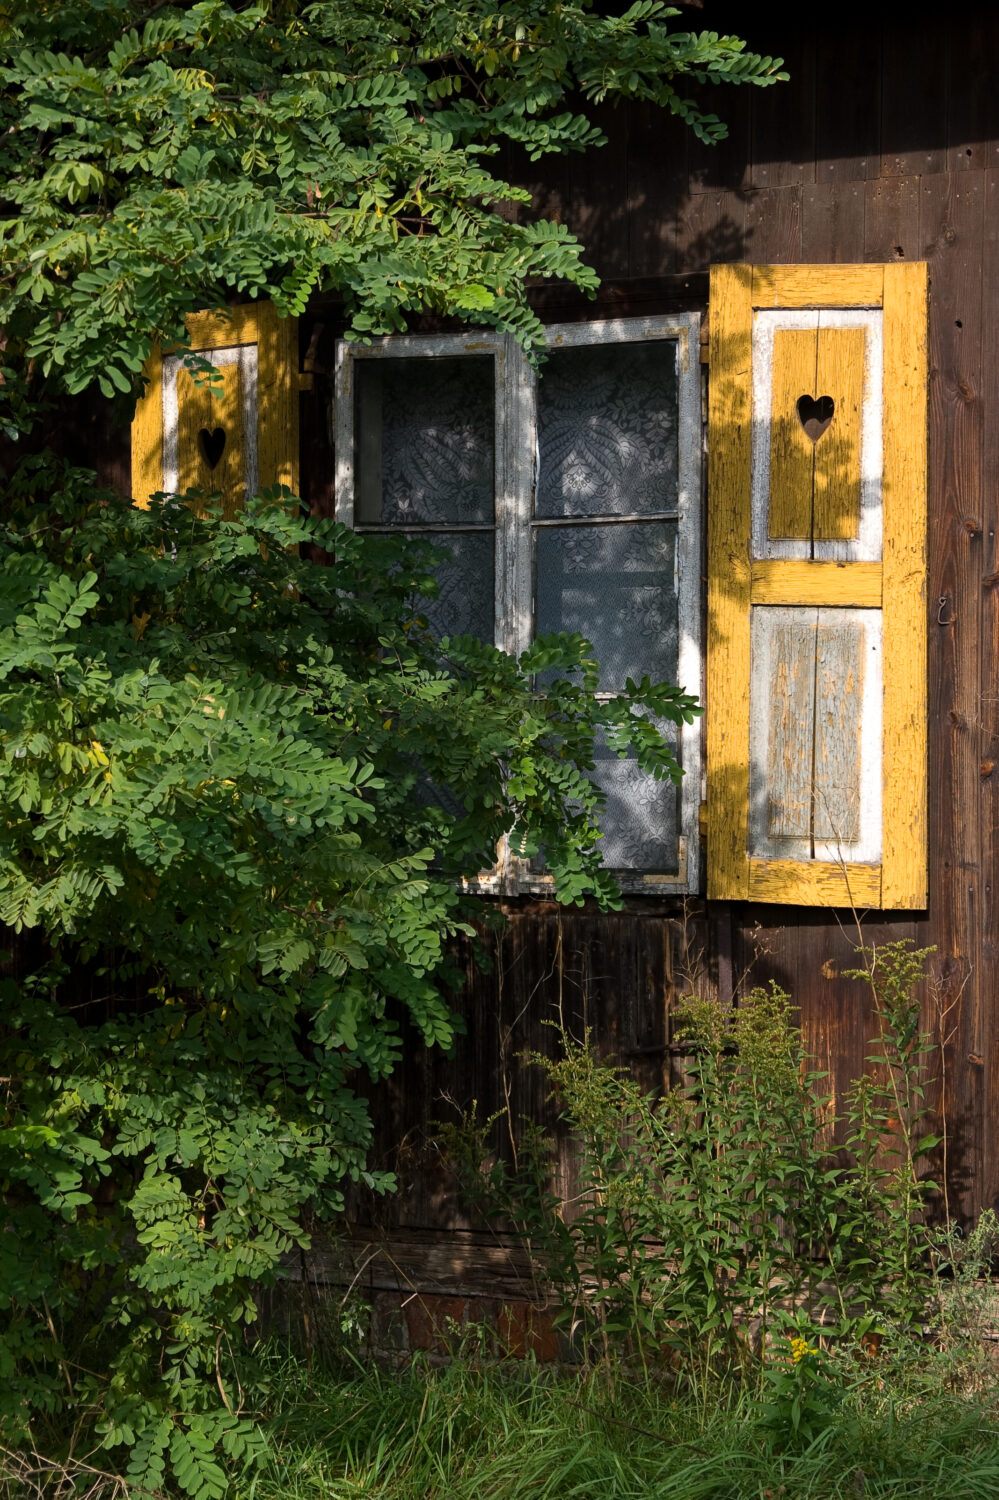 Zdjęcie. Ściana drewnianego domu z oknem, które przysłaniają gałęzie z drobnymi zielonymi liśćmi. Żółto-białe okiennice z wyciętym motywem serca.